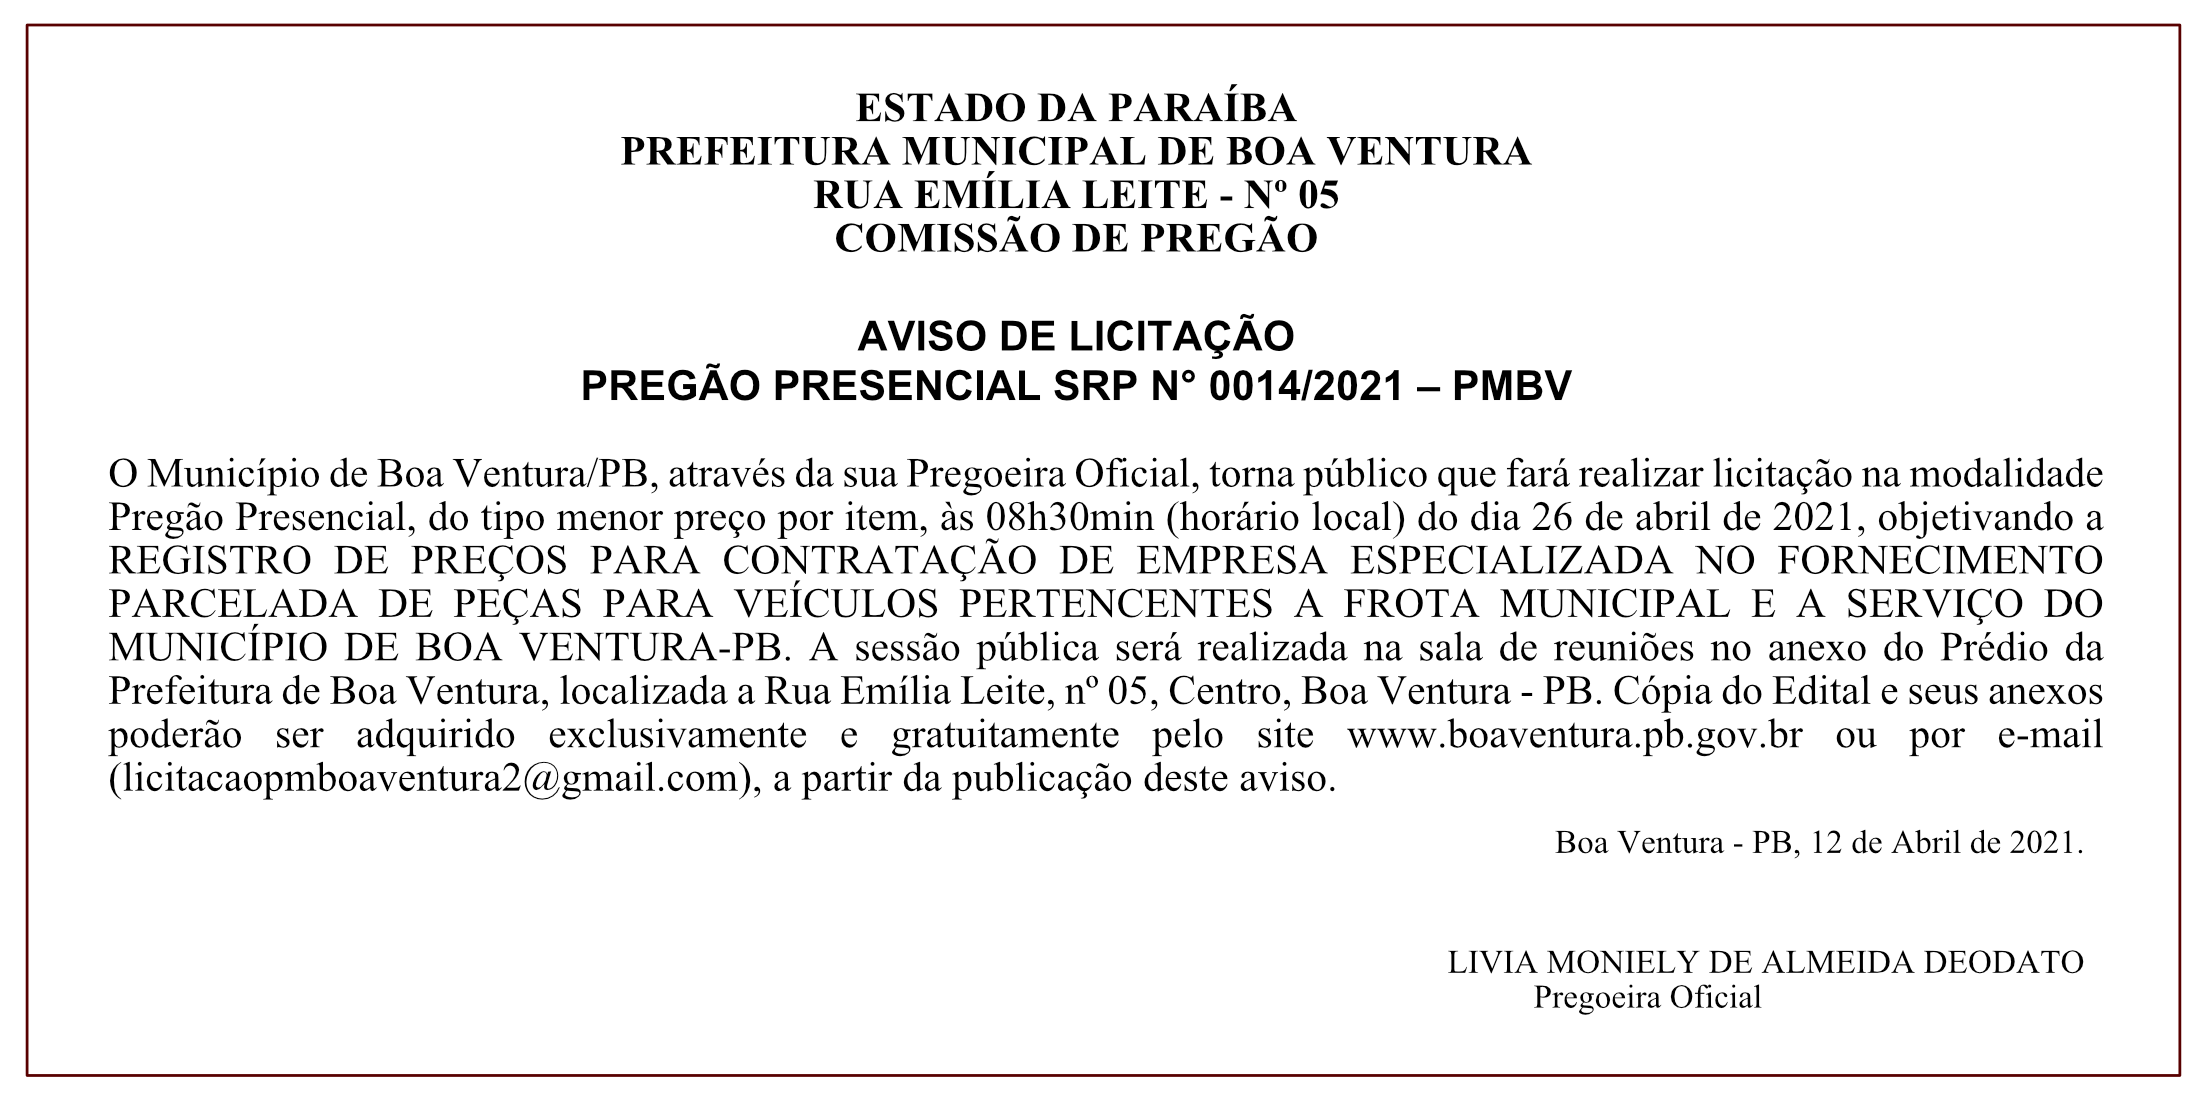 PREFEITURA MUNICIPAL DE BOA VENTURA – COMISSÃO DE PREGÃO – AVISO DE LICITAÇÃO – PREGÃO PRESENCIAL SRP N° 0014/2021